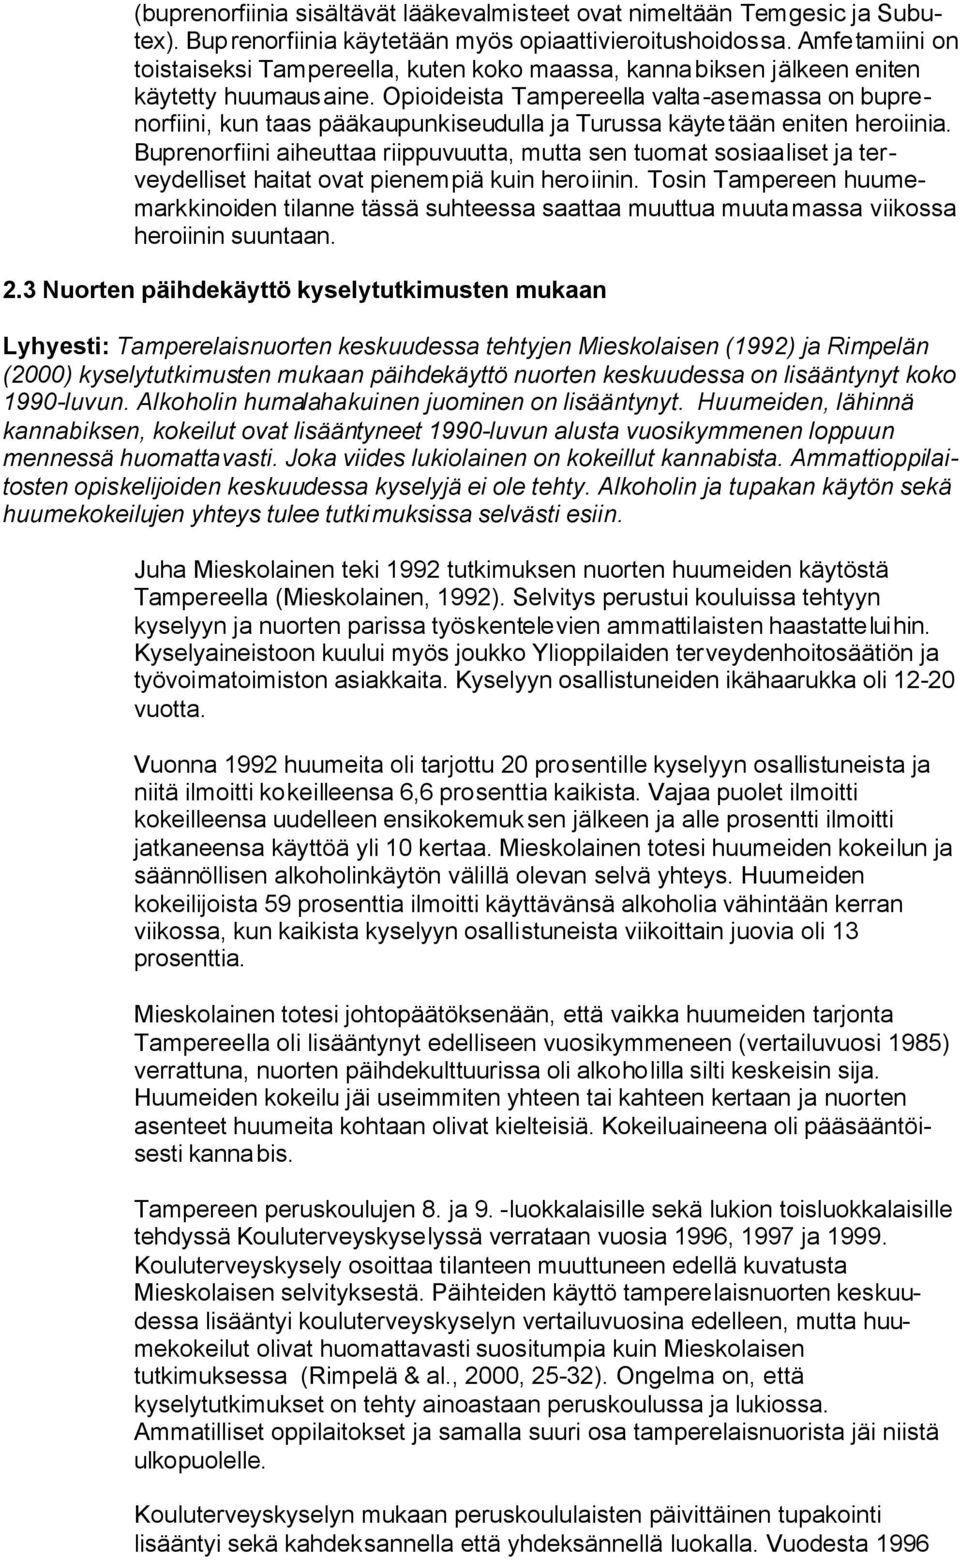 Opioideista Tampereella valta-asemassa on buprenorfiini, kun taas pääkaupunkiseudulla ja Turussa käytetään eniten heroiinia.